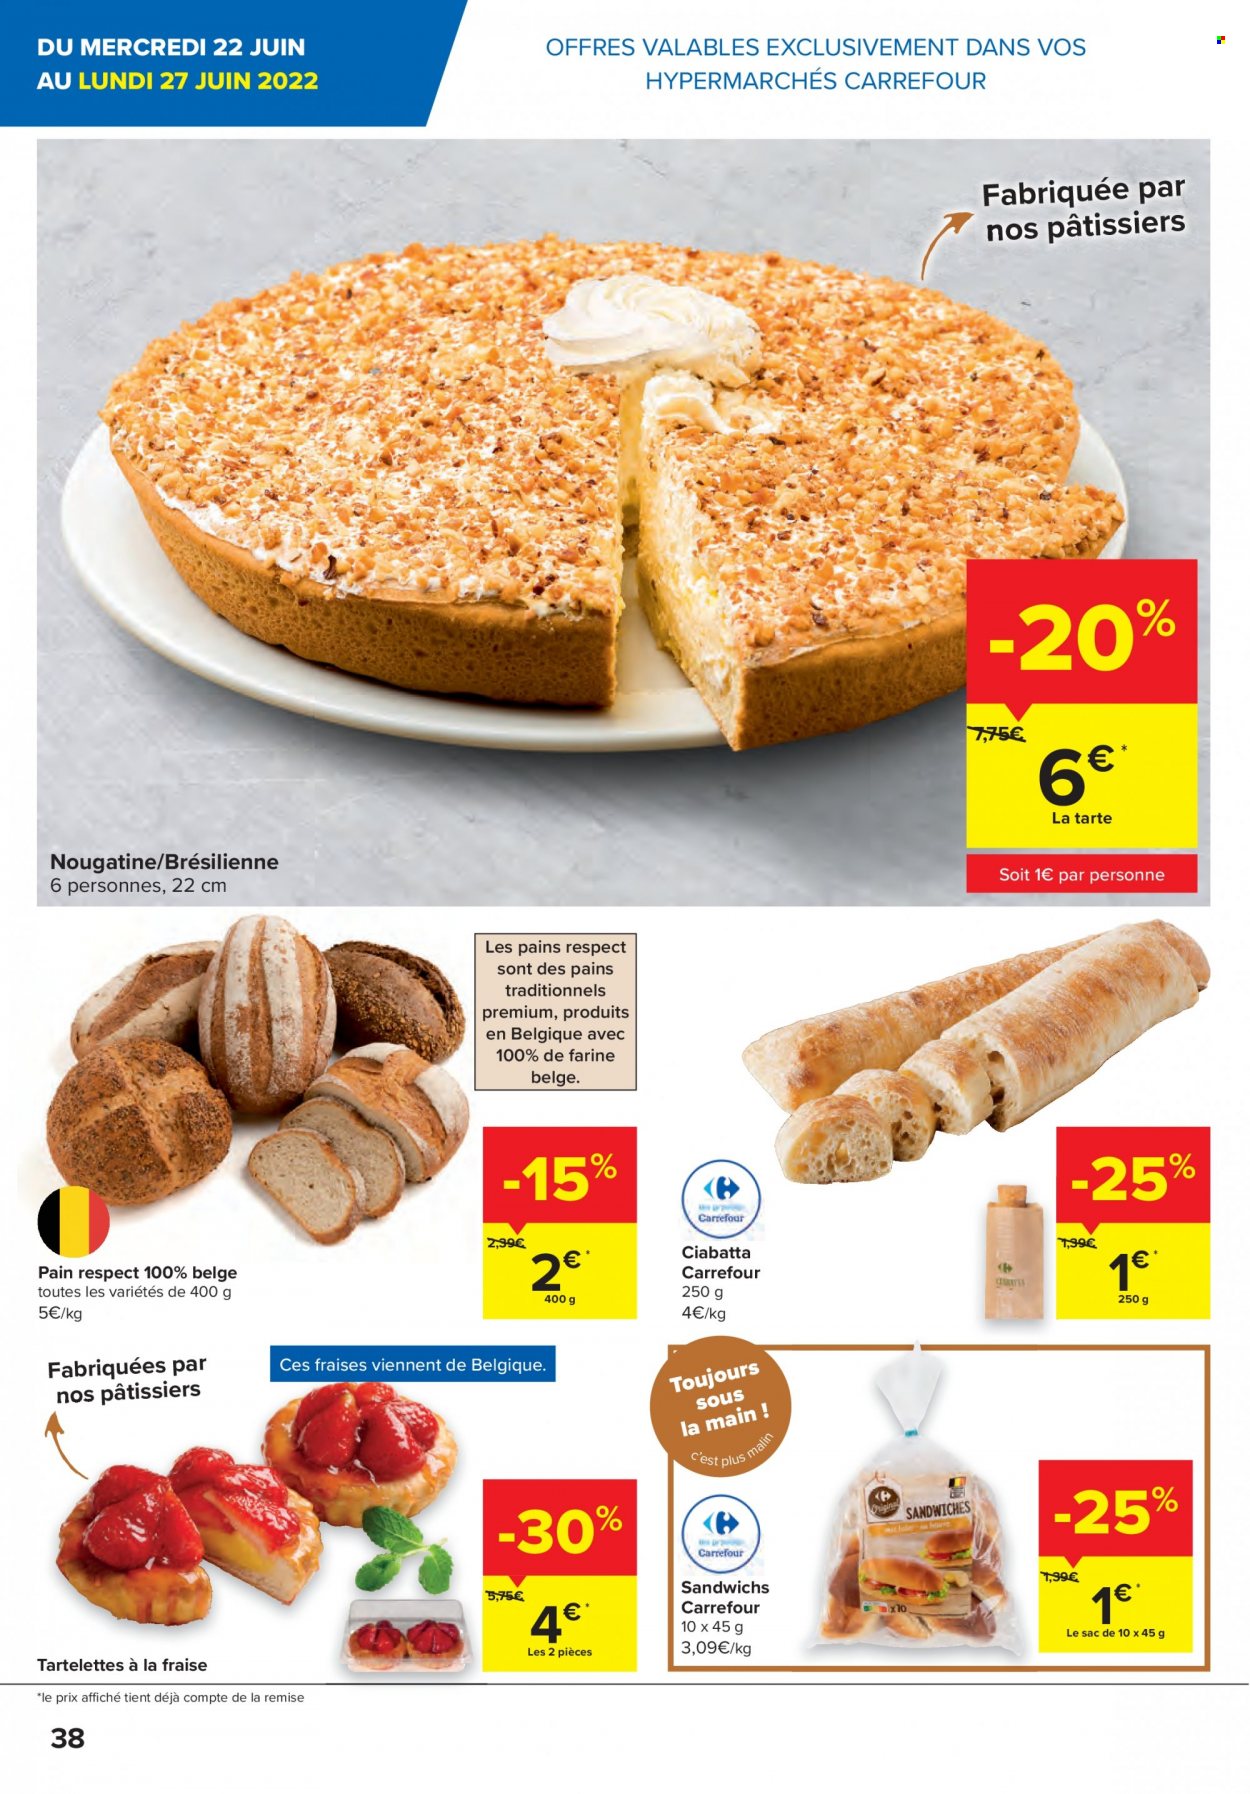 thumbnail - Catalogue Carrefour hypermarkt - 22/06/2022 - 04/07/2022 - Produits soldés - fraises, tarte, ciabatta, pain, tartelettes, sac à main. Page 38.